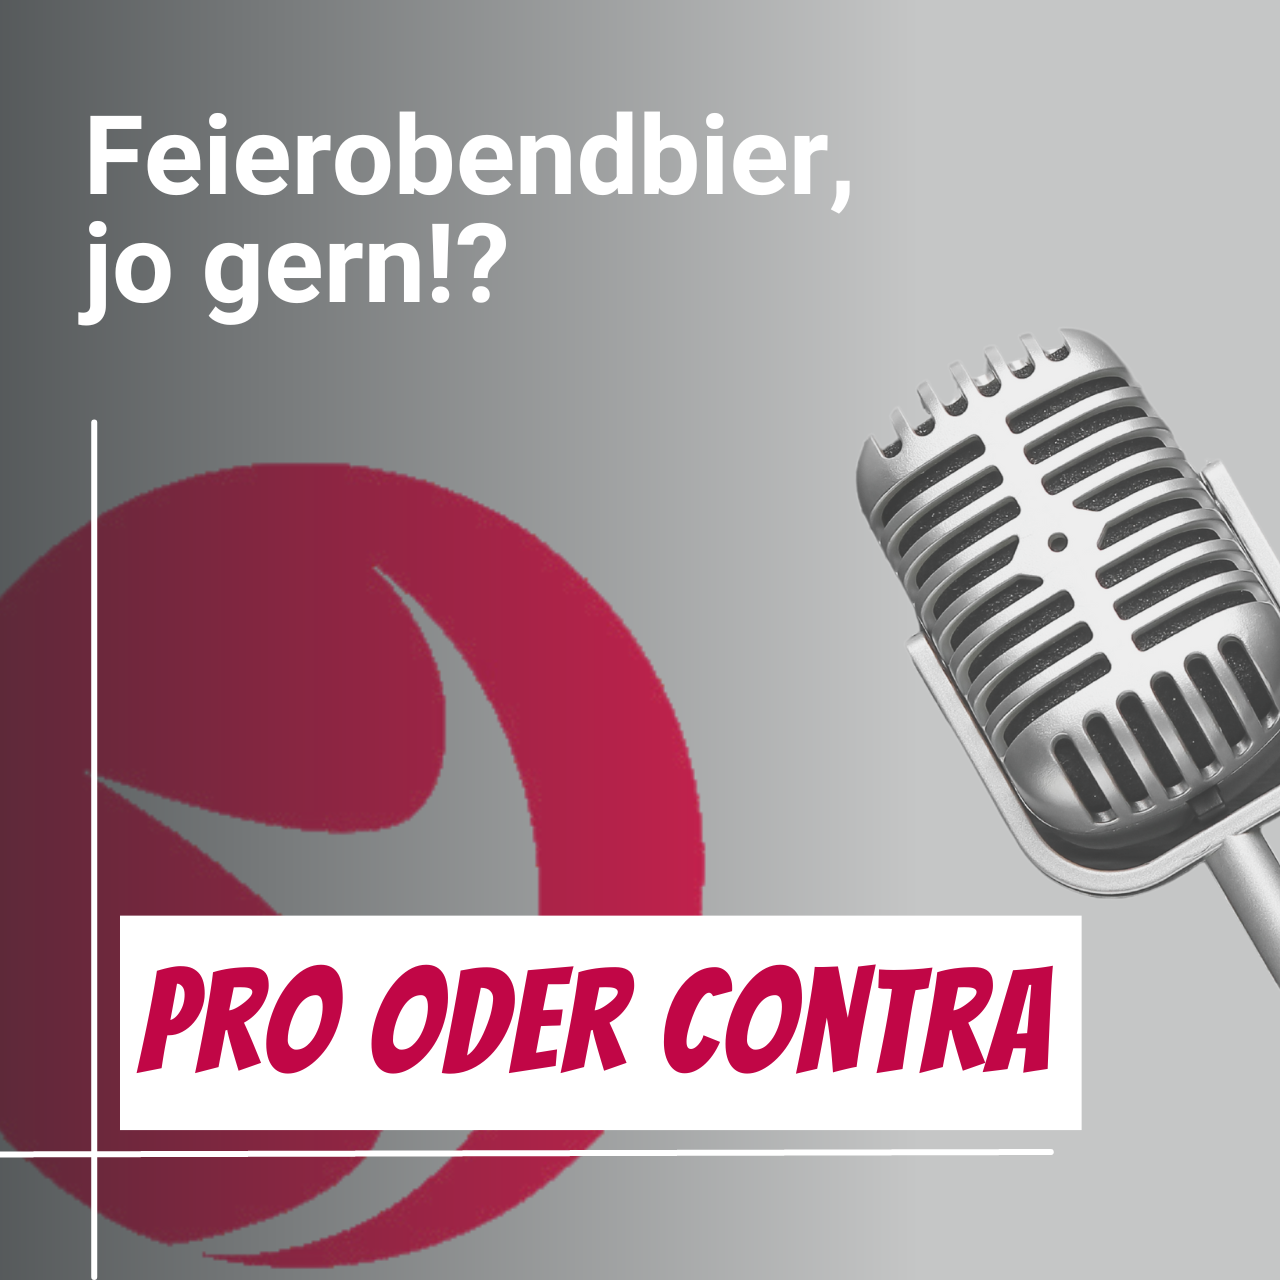 #Pro&Contra mit Priska - Feierobendbier, jo gern!?